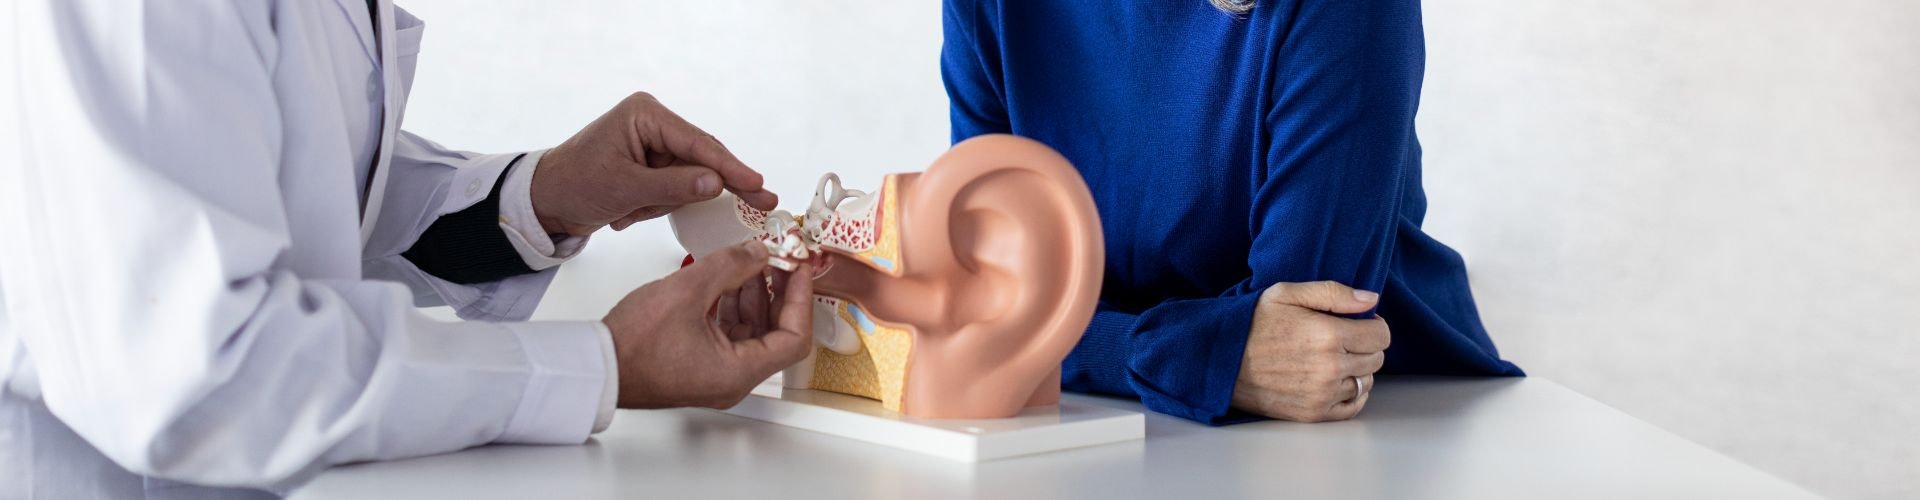 كيف تتم عملية السمع